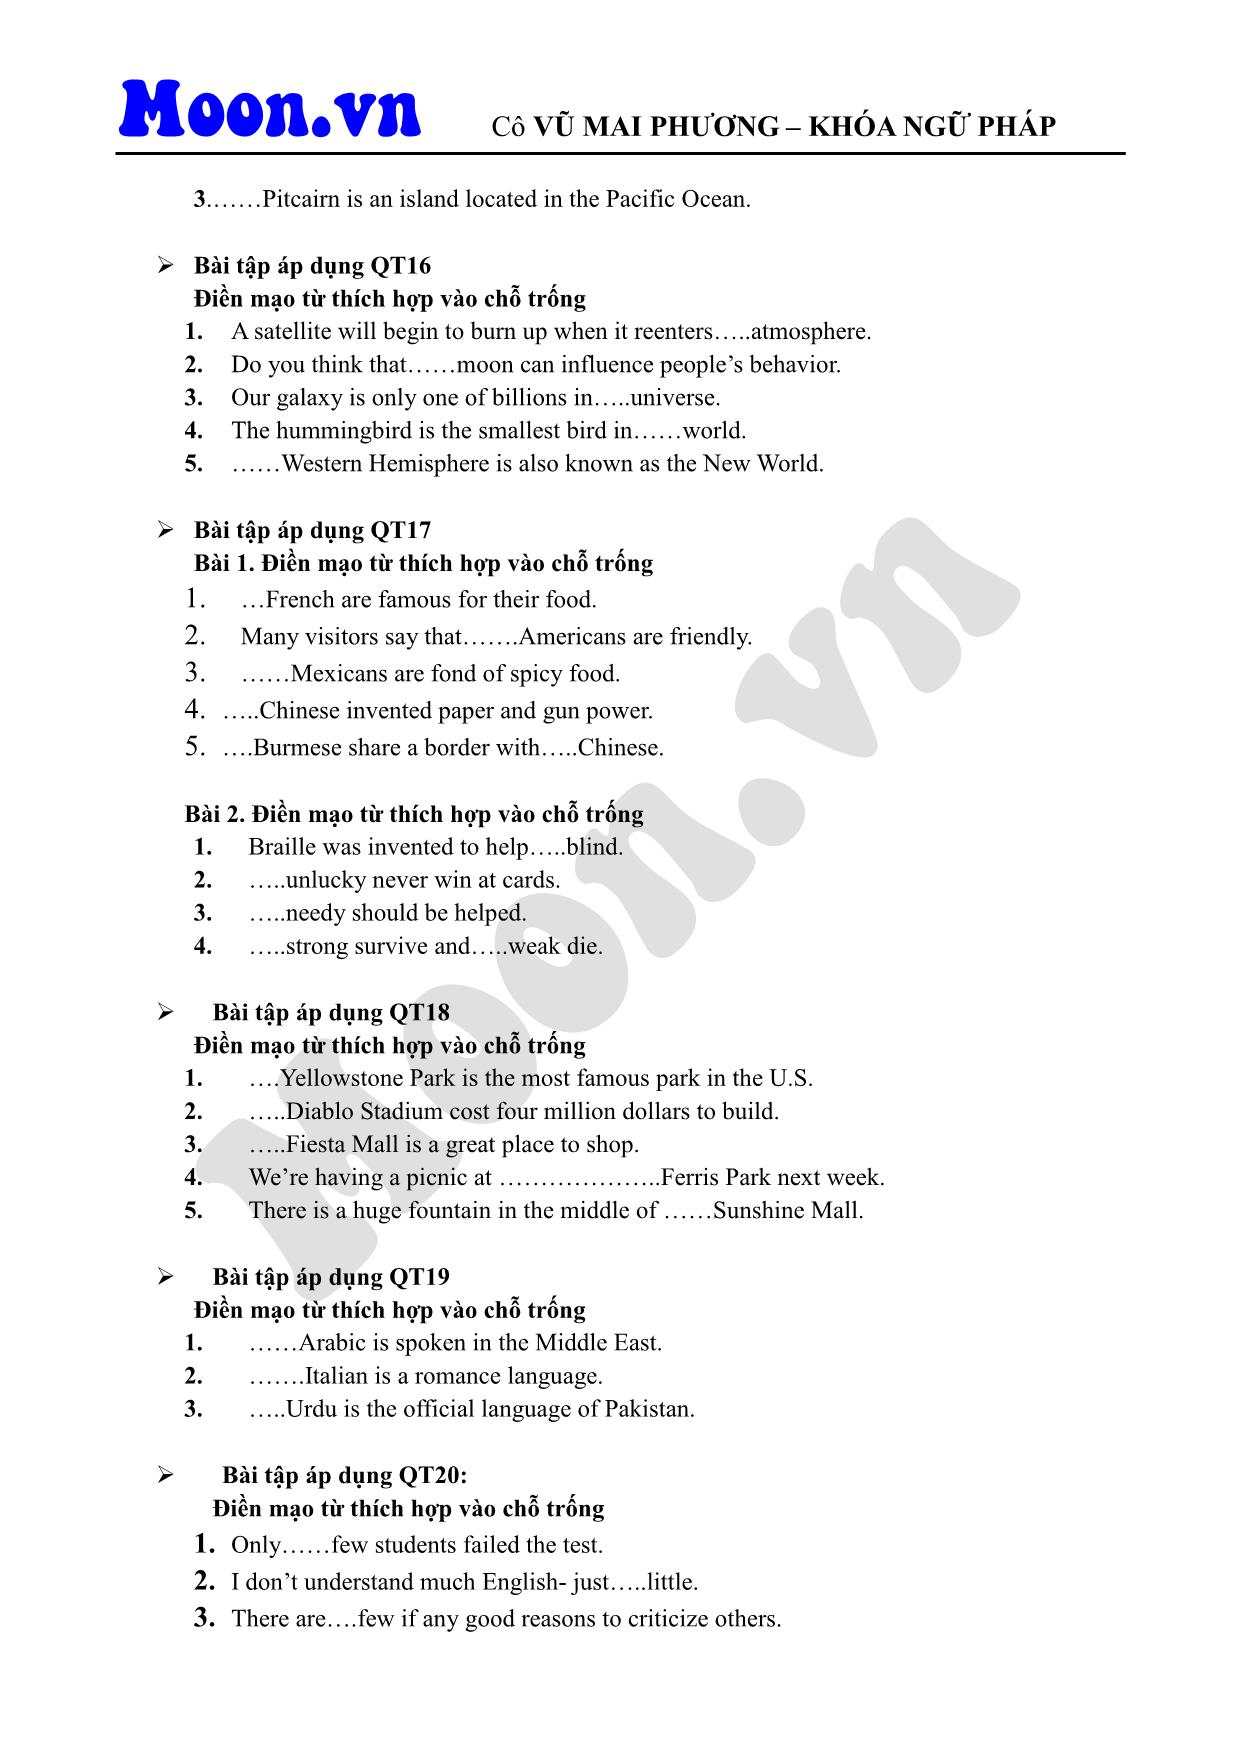 Giáo trình Tiếng Anh - Mạo từ (Phần 3) trang 3